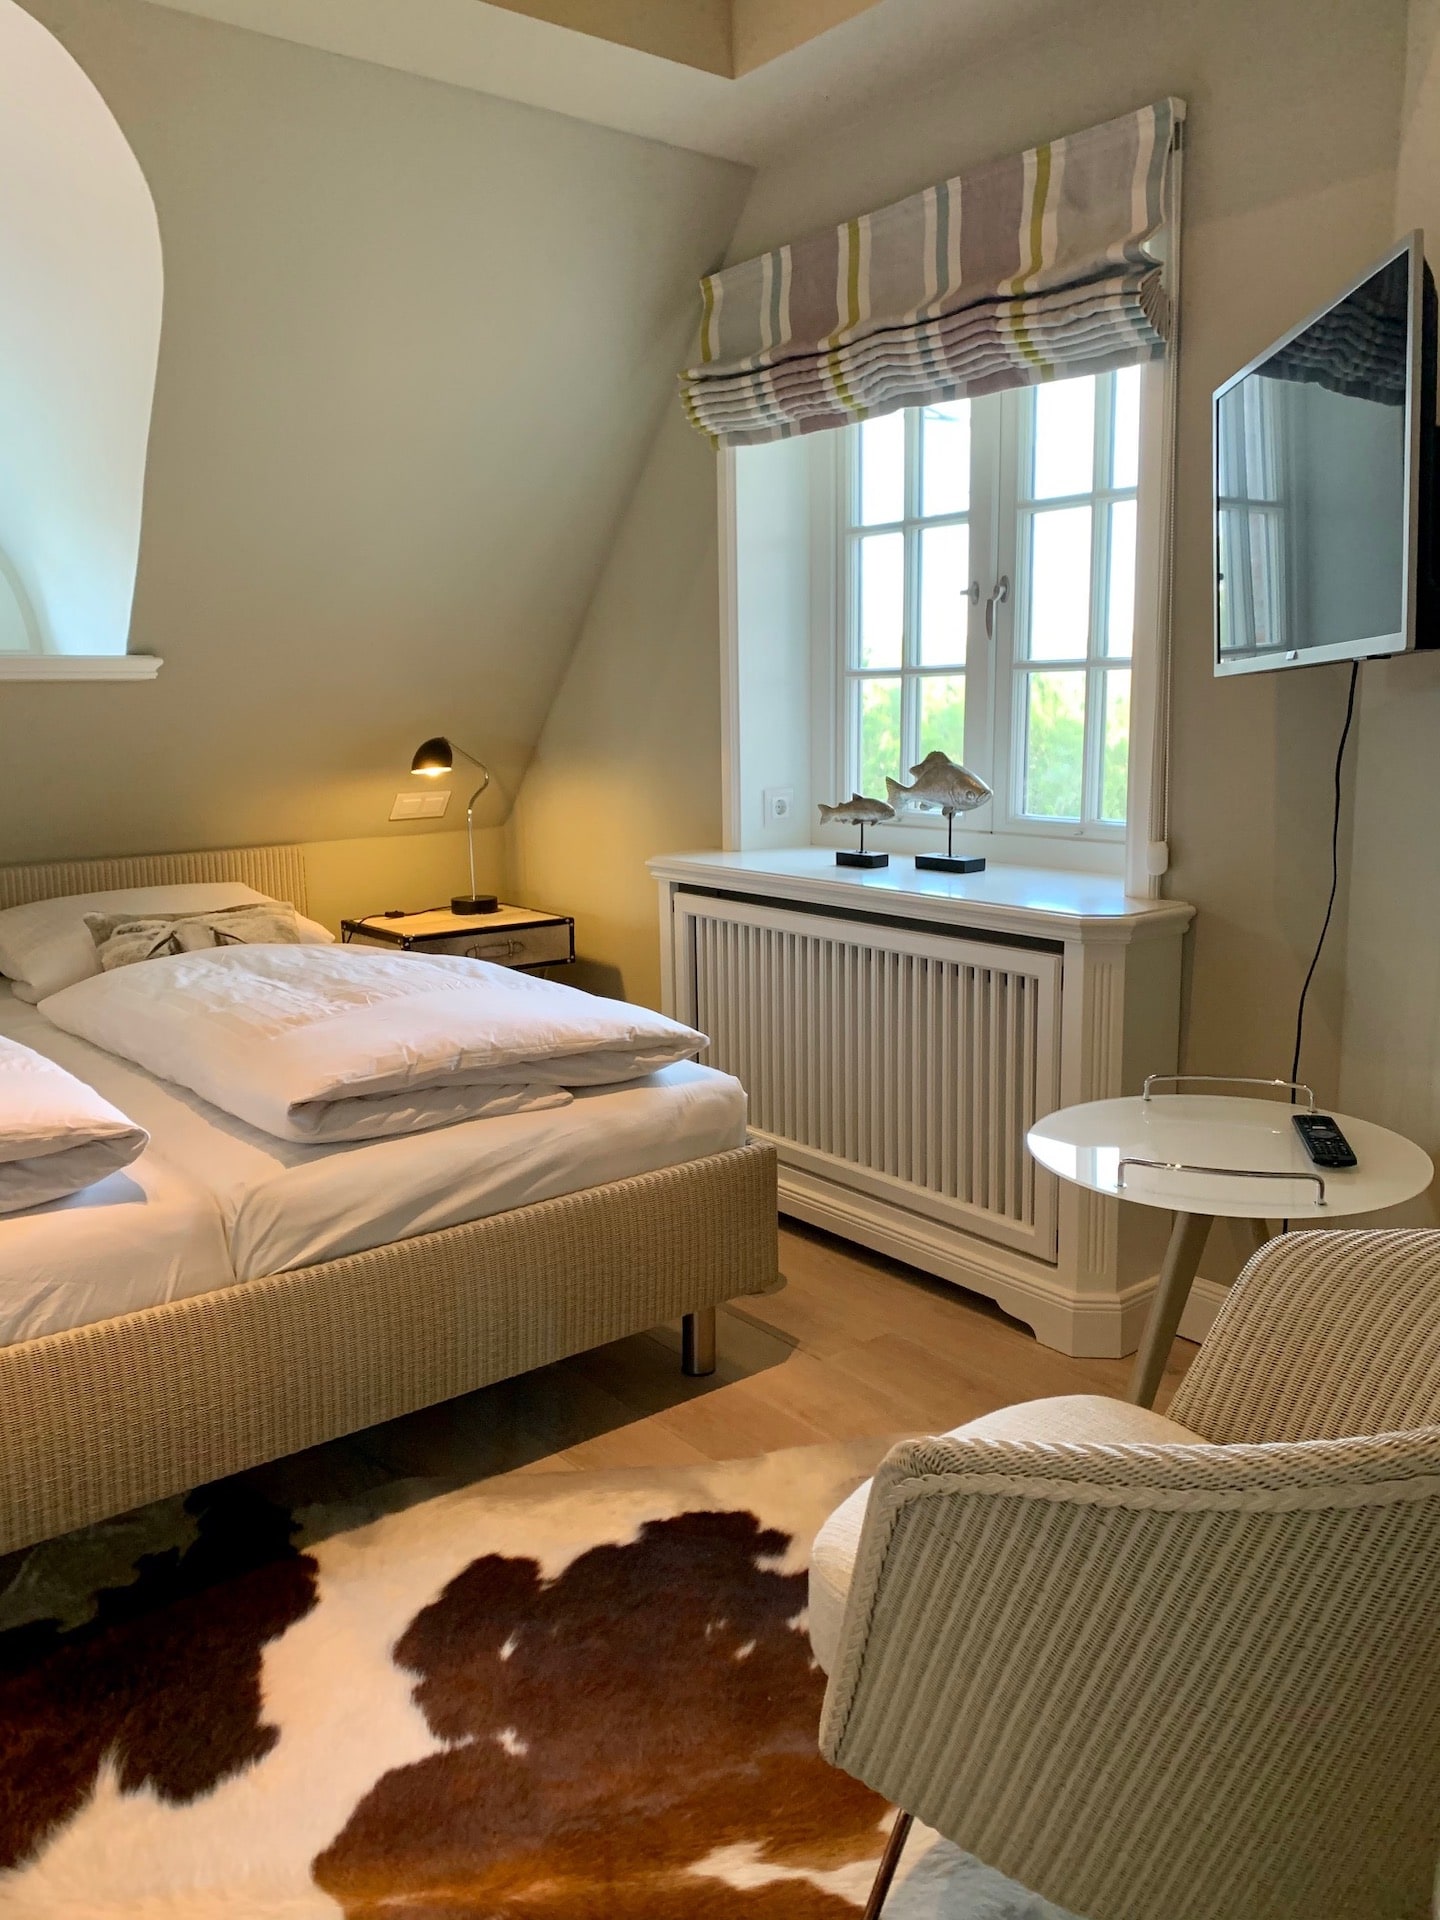 Schlafzimmer für Paare in der Ferienwohnung "Sonnenhügel" in Rantum auf Sylt, betreut vom Hotel Düne